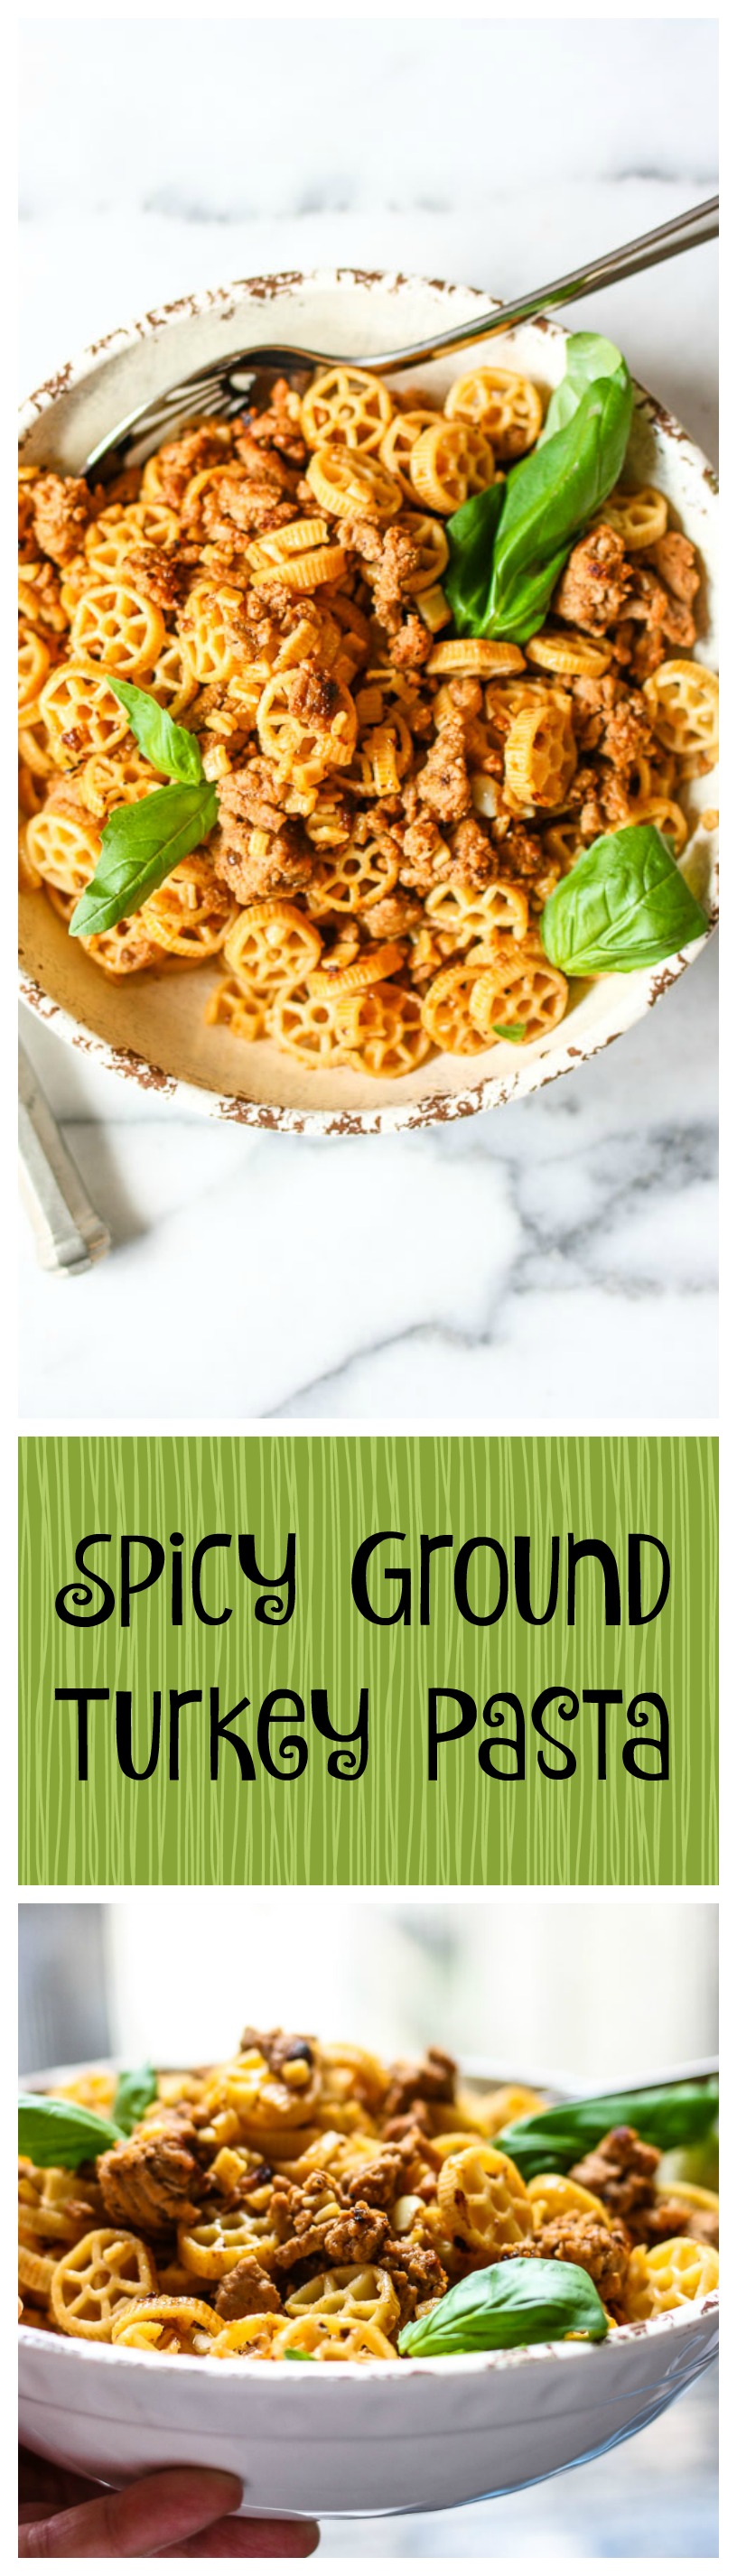 spicy ground turkey pasta